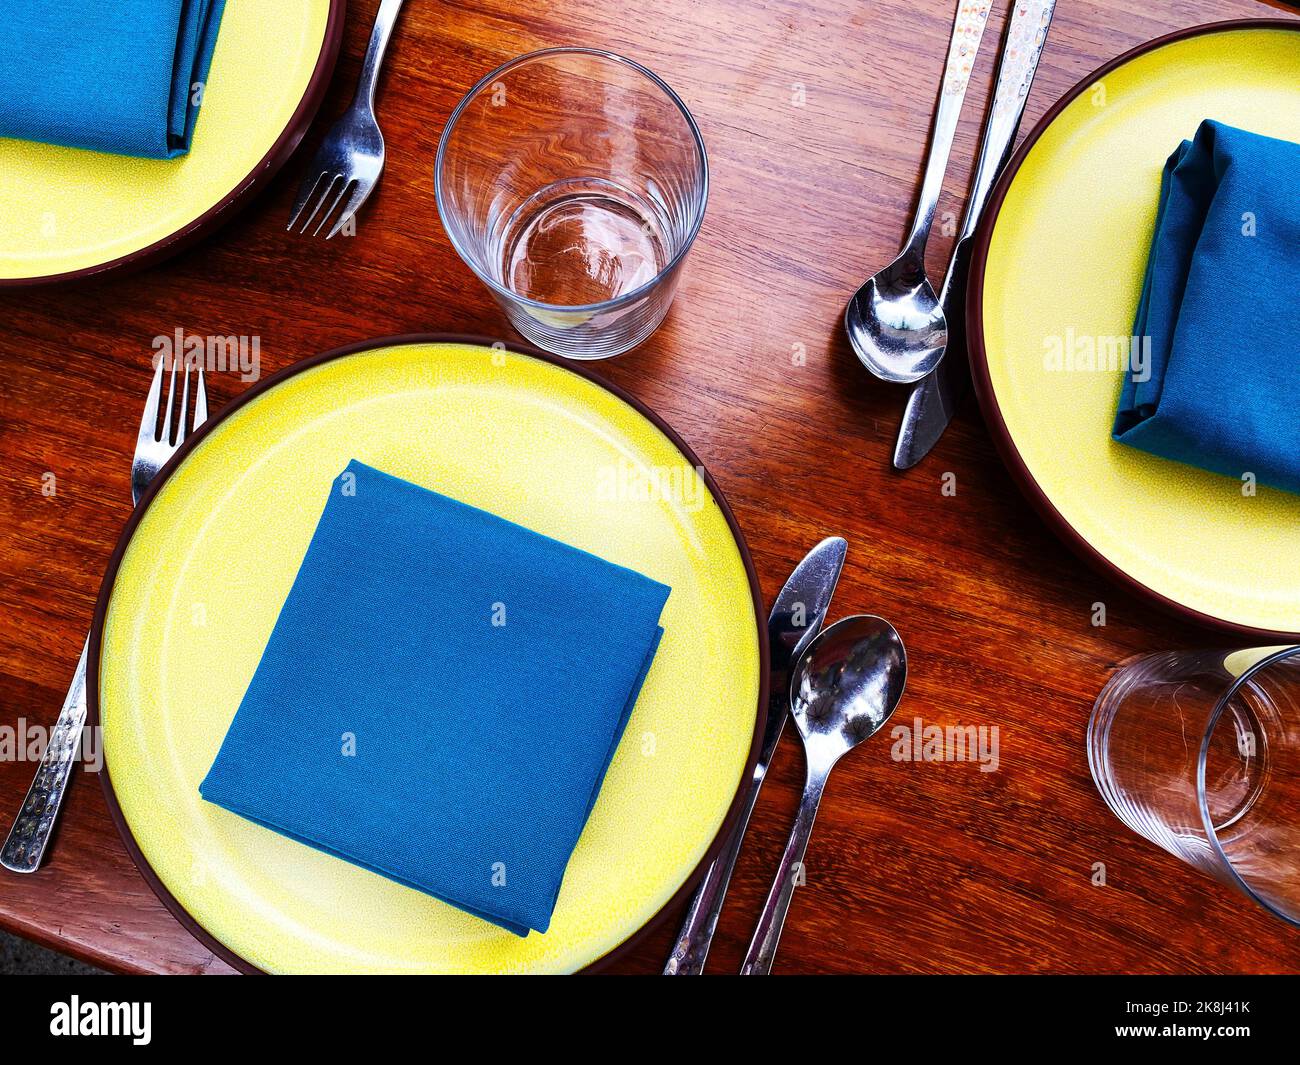 Un décor avec des serviettes bleues et des assiettes jaunes. Disposition de la table de restaurant moderne et colorée, inflammable Banque D'Images